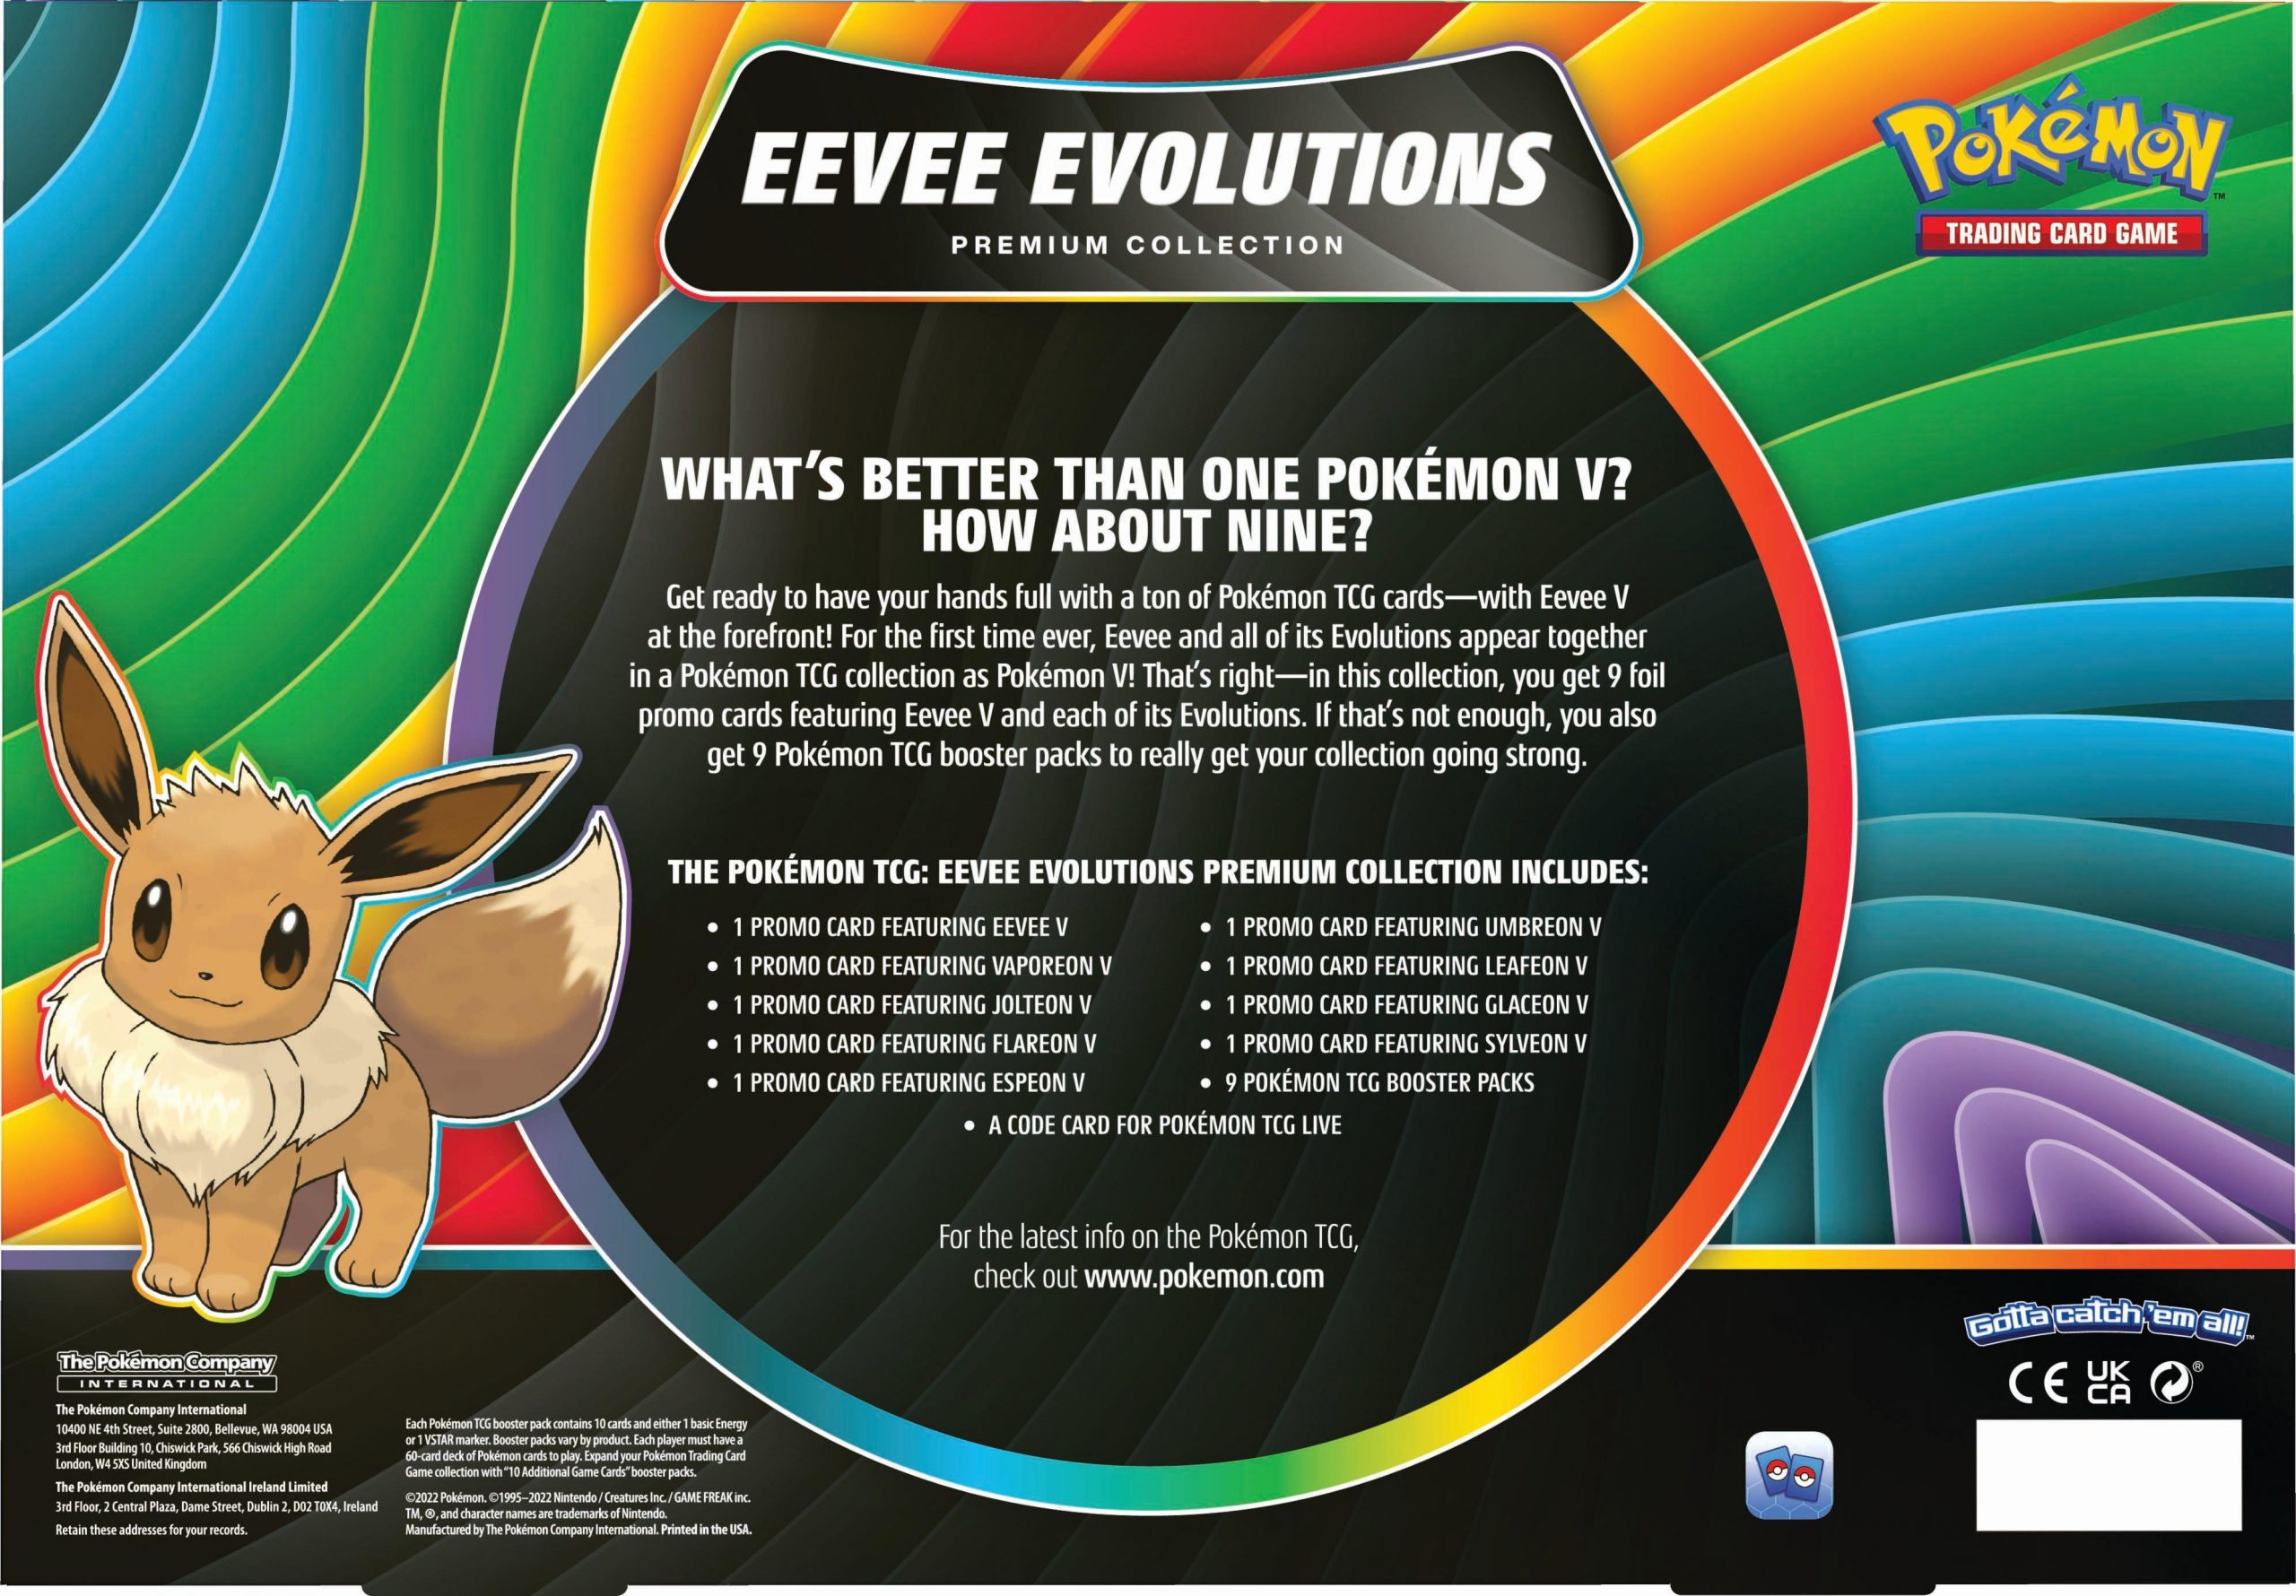 Top eevee evolution in Pokemon go 2021  how to get best eevee evolution  pokemon go. 